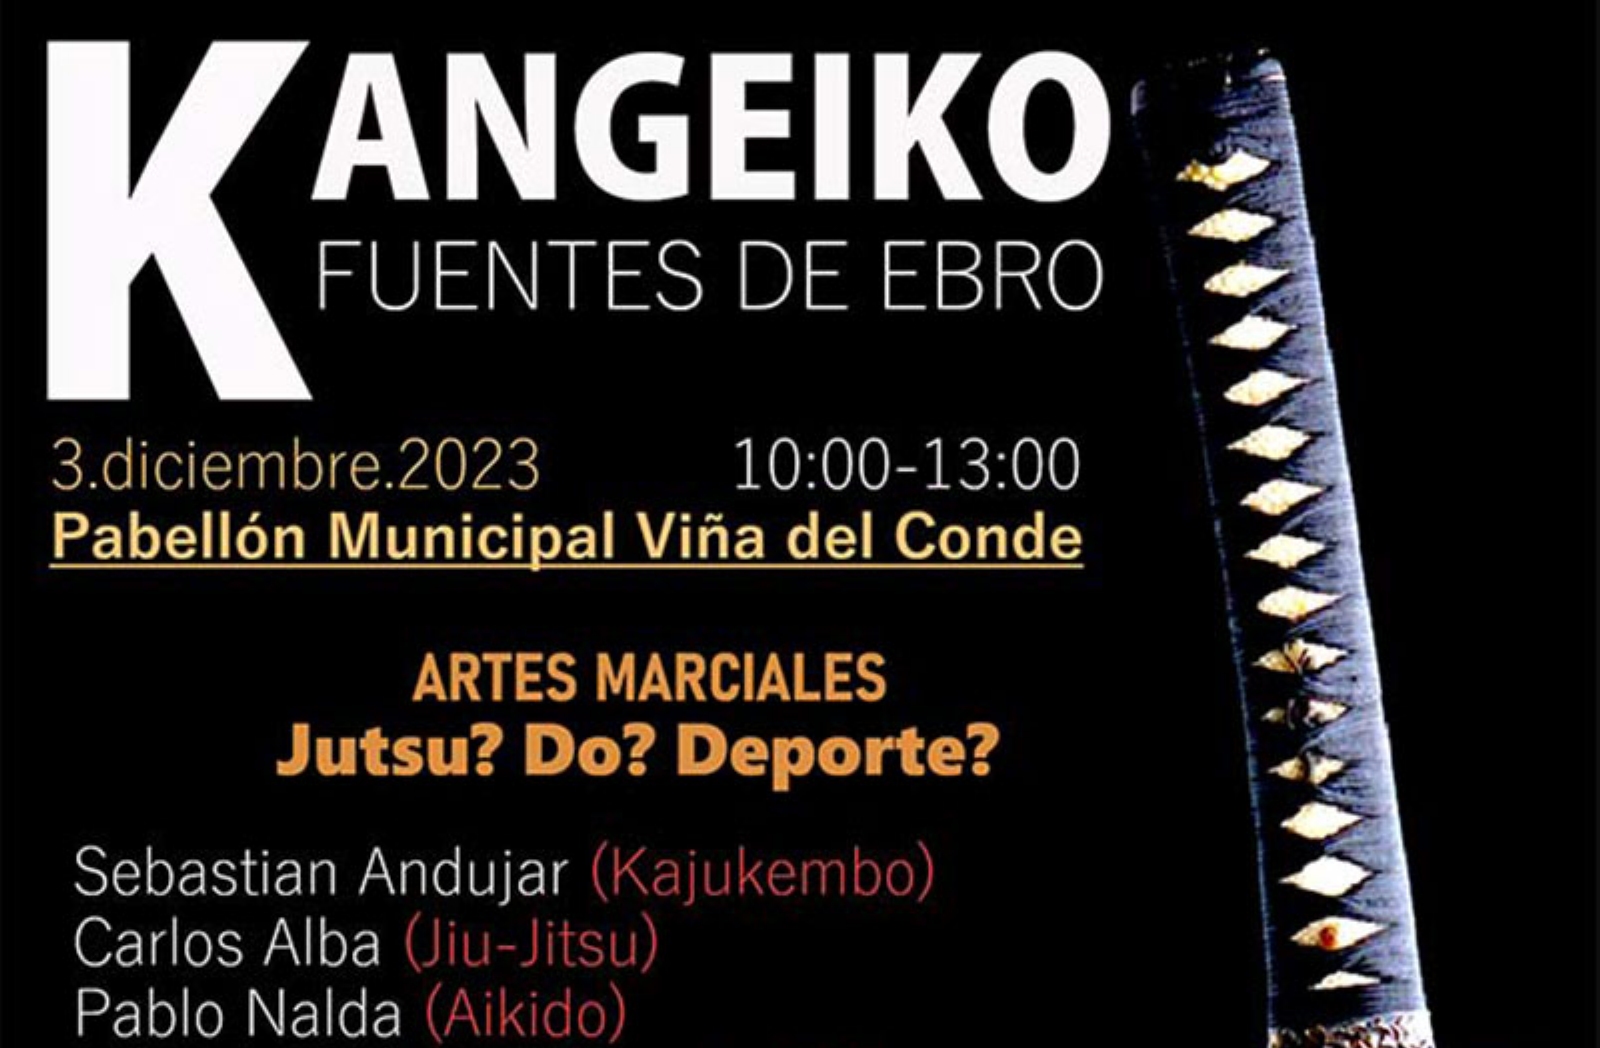 Kangeiko de Artes marciales en Fuentes de Ebro (Zaragoza)